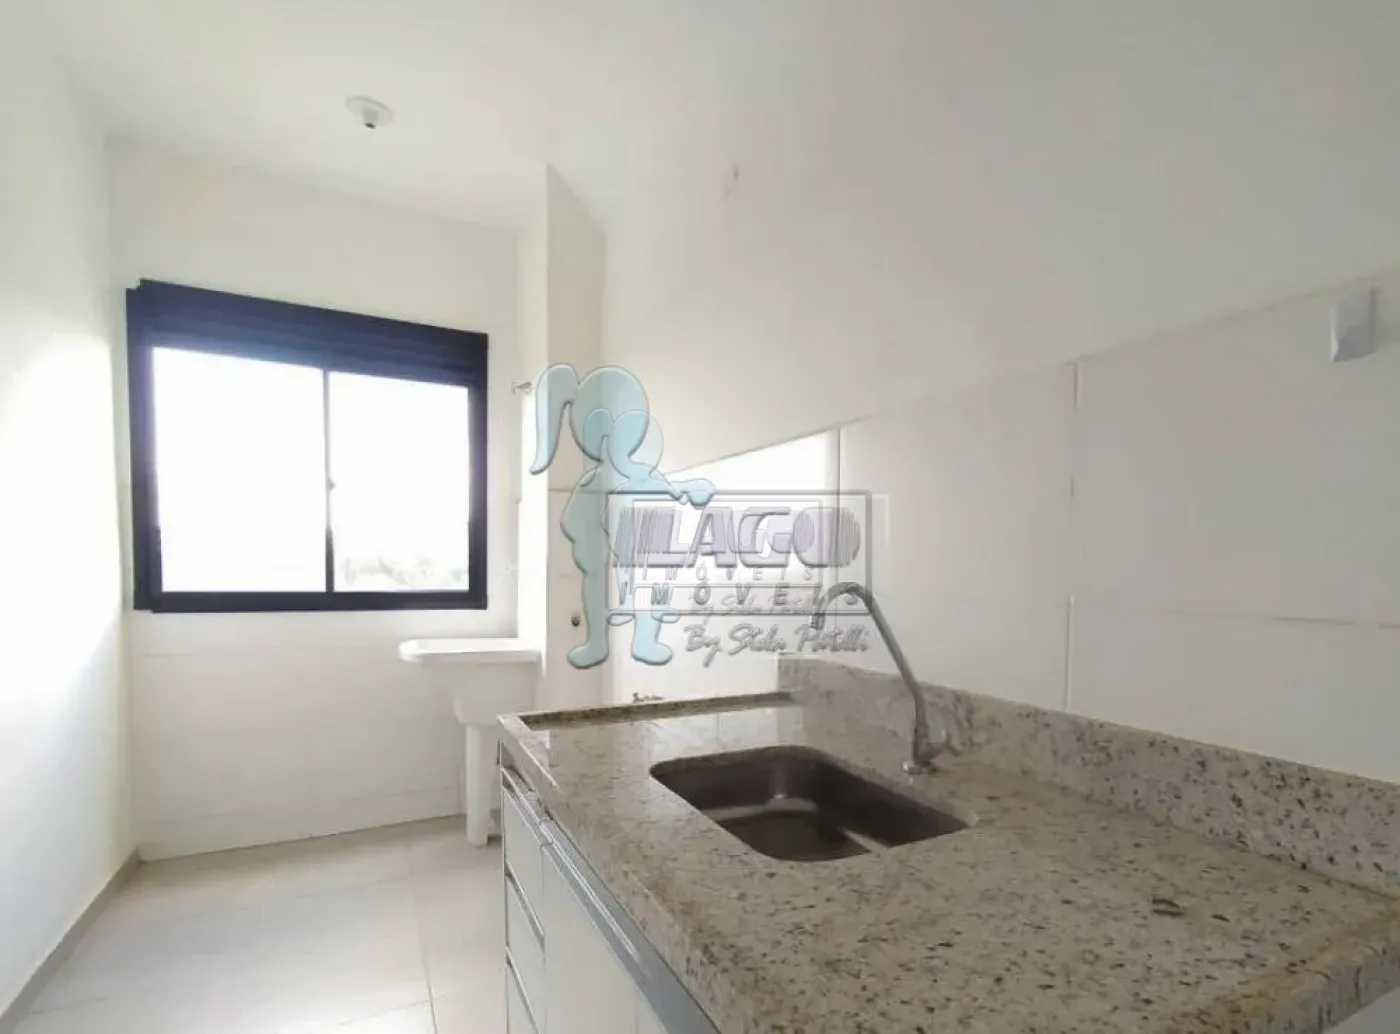 Comprar Apartamentos / Padrão em Ribeirão Preto R$ 239.000,00 - Foto 8